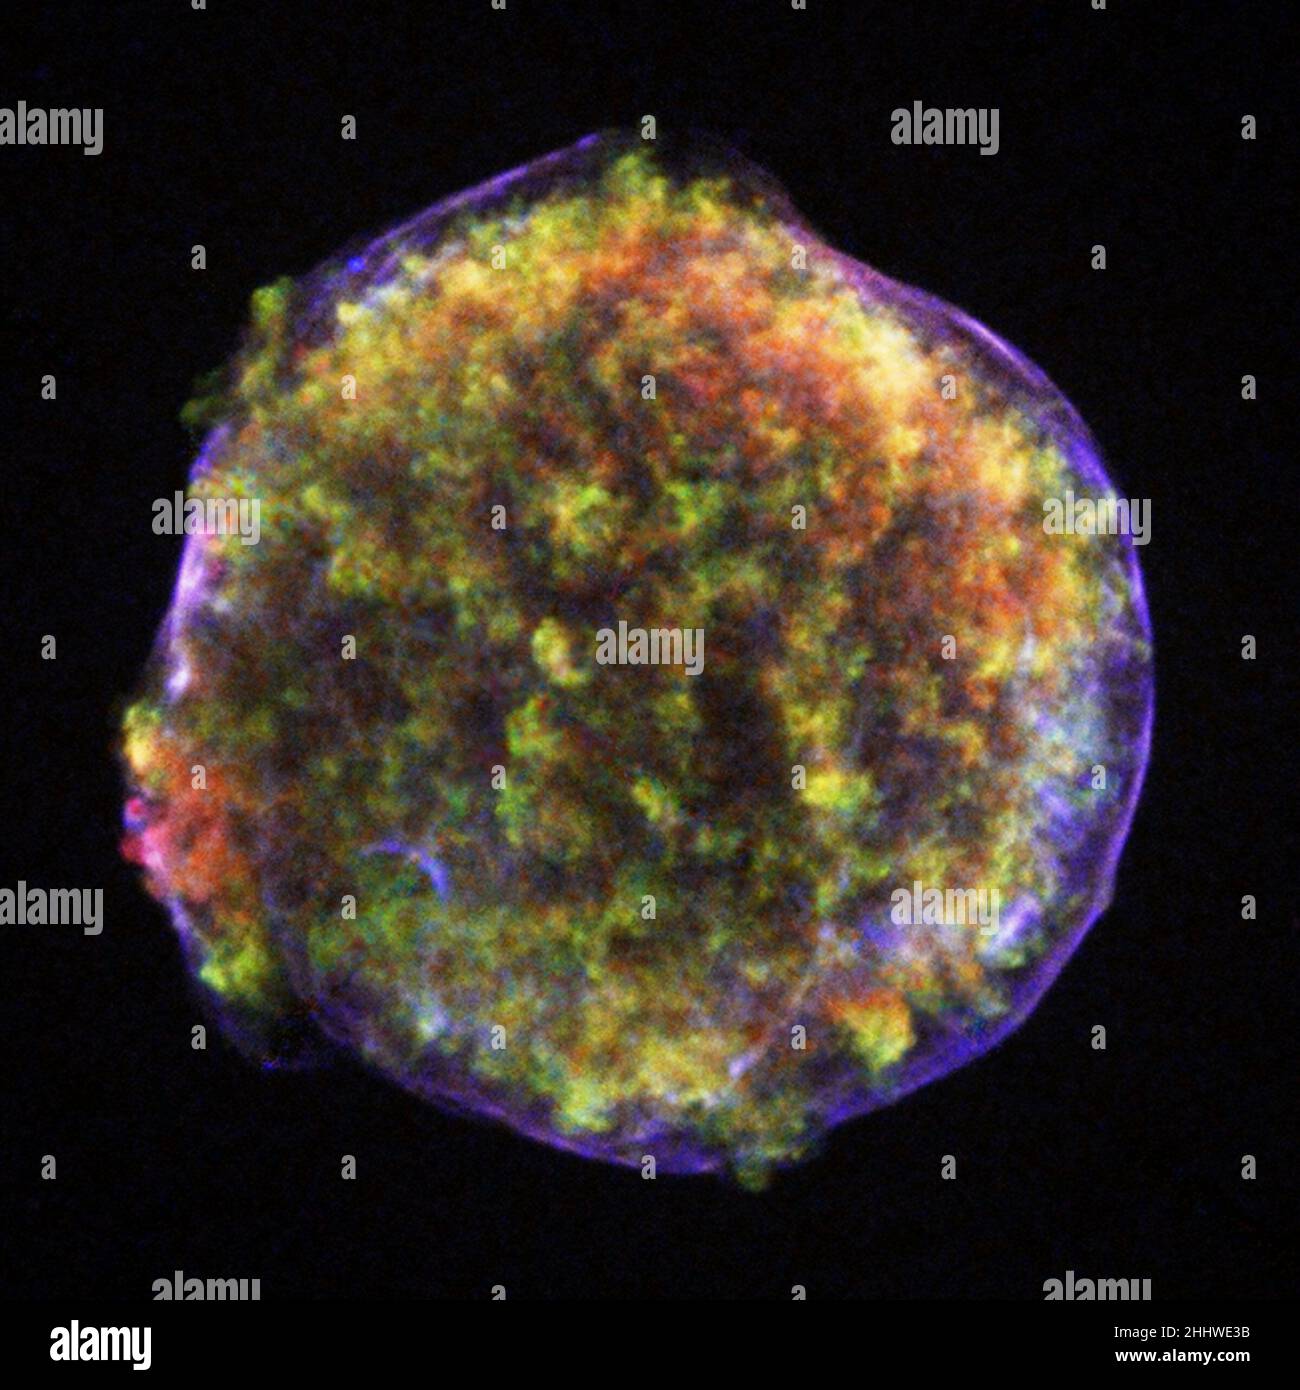 Reste de Supranova de Tycho.En 1572, l'astronome danois Tycho Brahe observa et étudia l'explosion d'une étoile qui devint connue sous le nom de supernova de Tycho.Plus de quatre cents ans plus tard, cette photo du reste de supernova montre une bulle de débris de plusieurs degrés (vert et rouge) à l'intérieur d'une coquille d'électrons de très haute énergie (bleu filamenteux) s'étendant à environ 5000 km/s. photo de l'observatoire à rayons X de Chandra. Banque D'Images